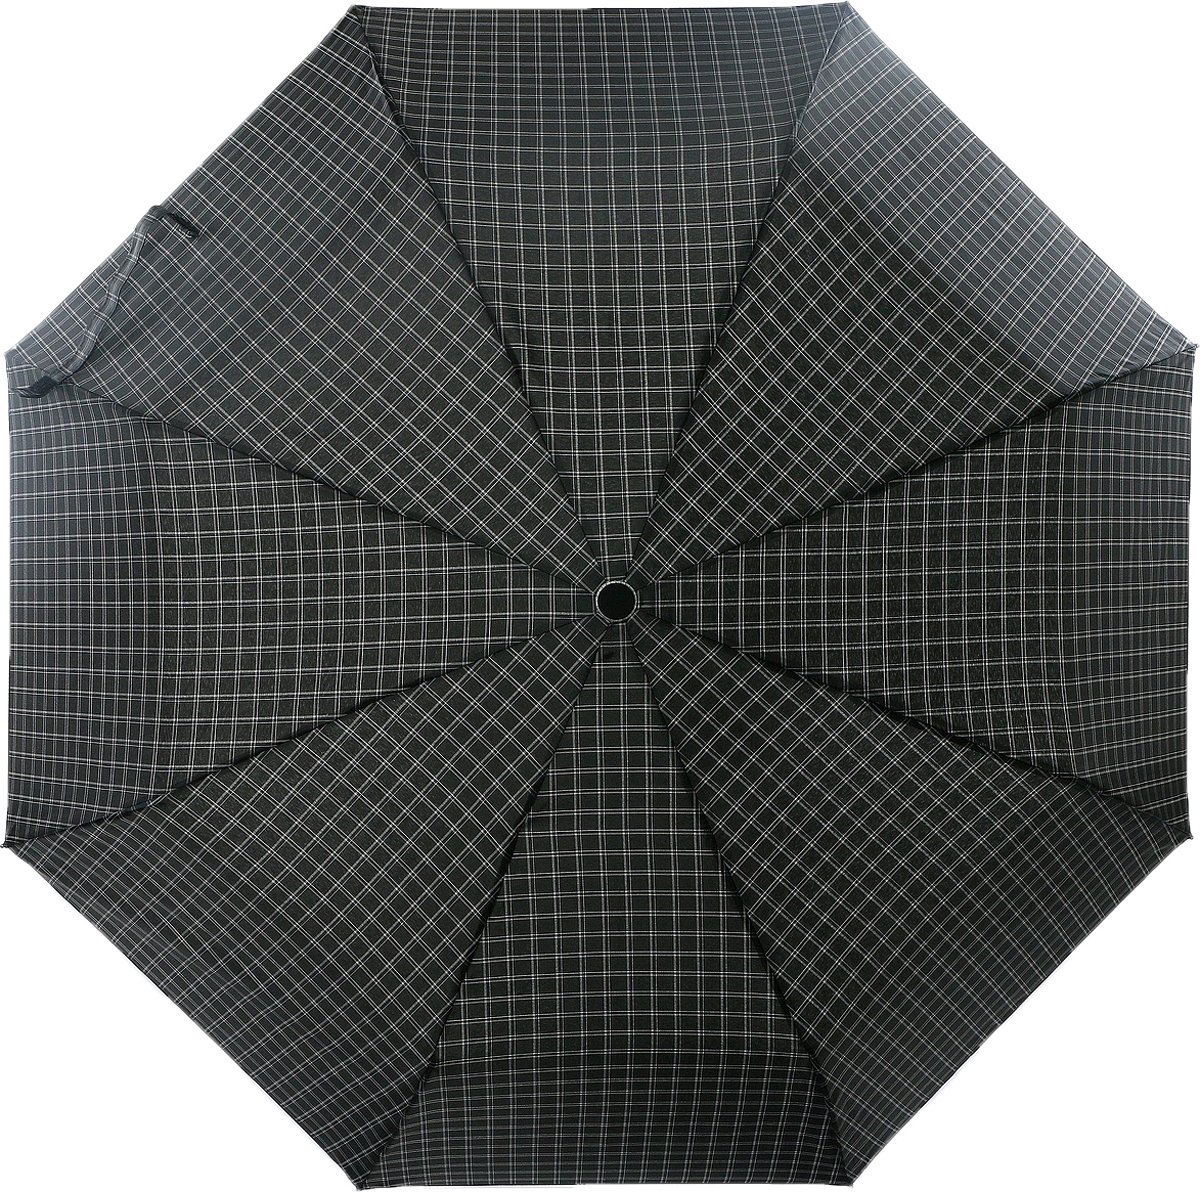 Зонт мужской Magic Rain, автомат, 3 сложения, цвет: черный, белый, серый. 7021-1703